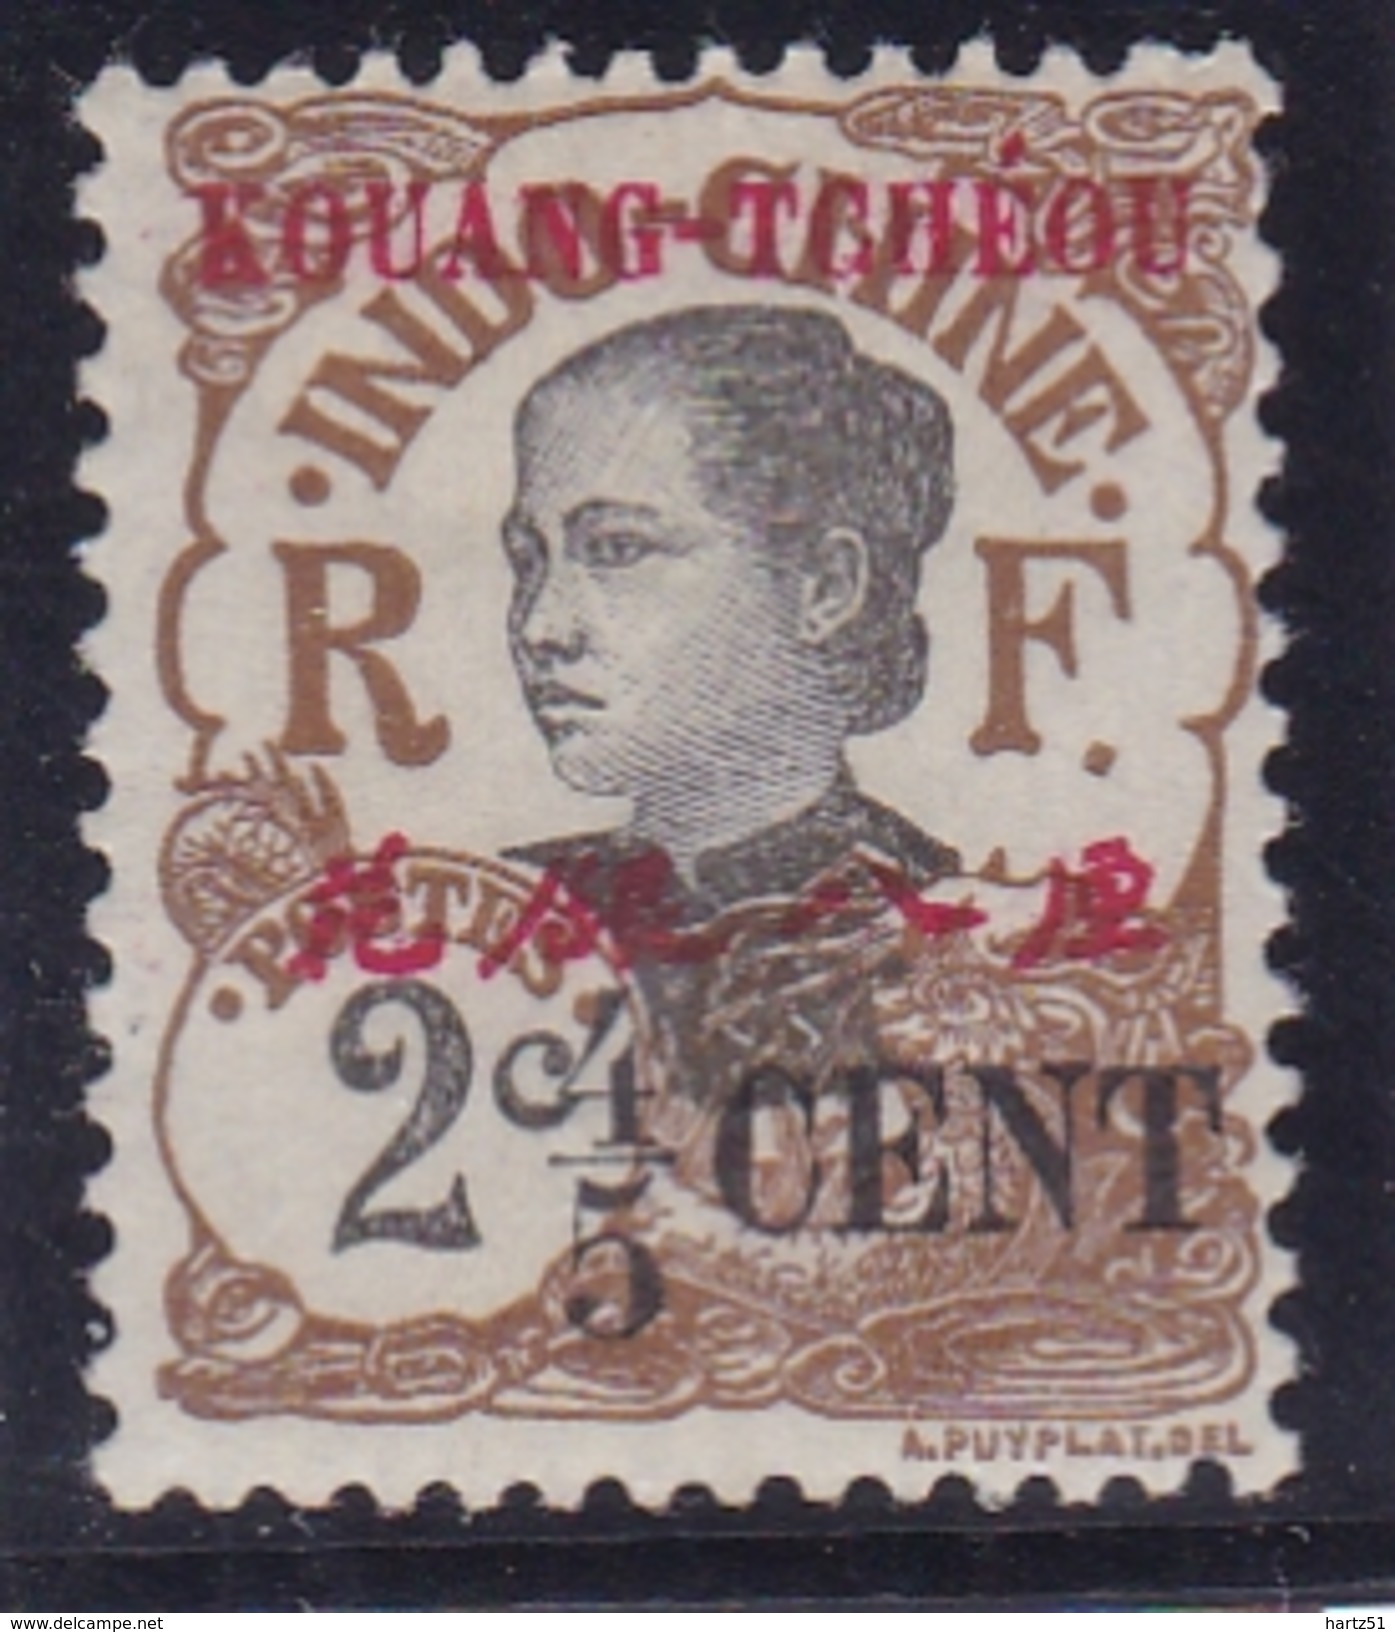 Kouang Tchéou N° 36 Neuf * - Unused Stamps